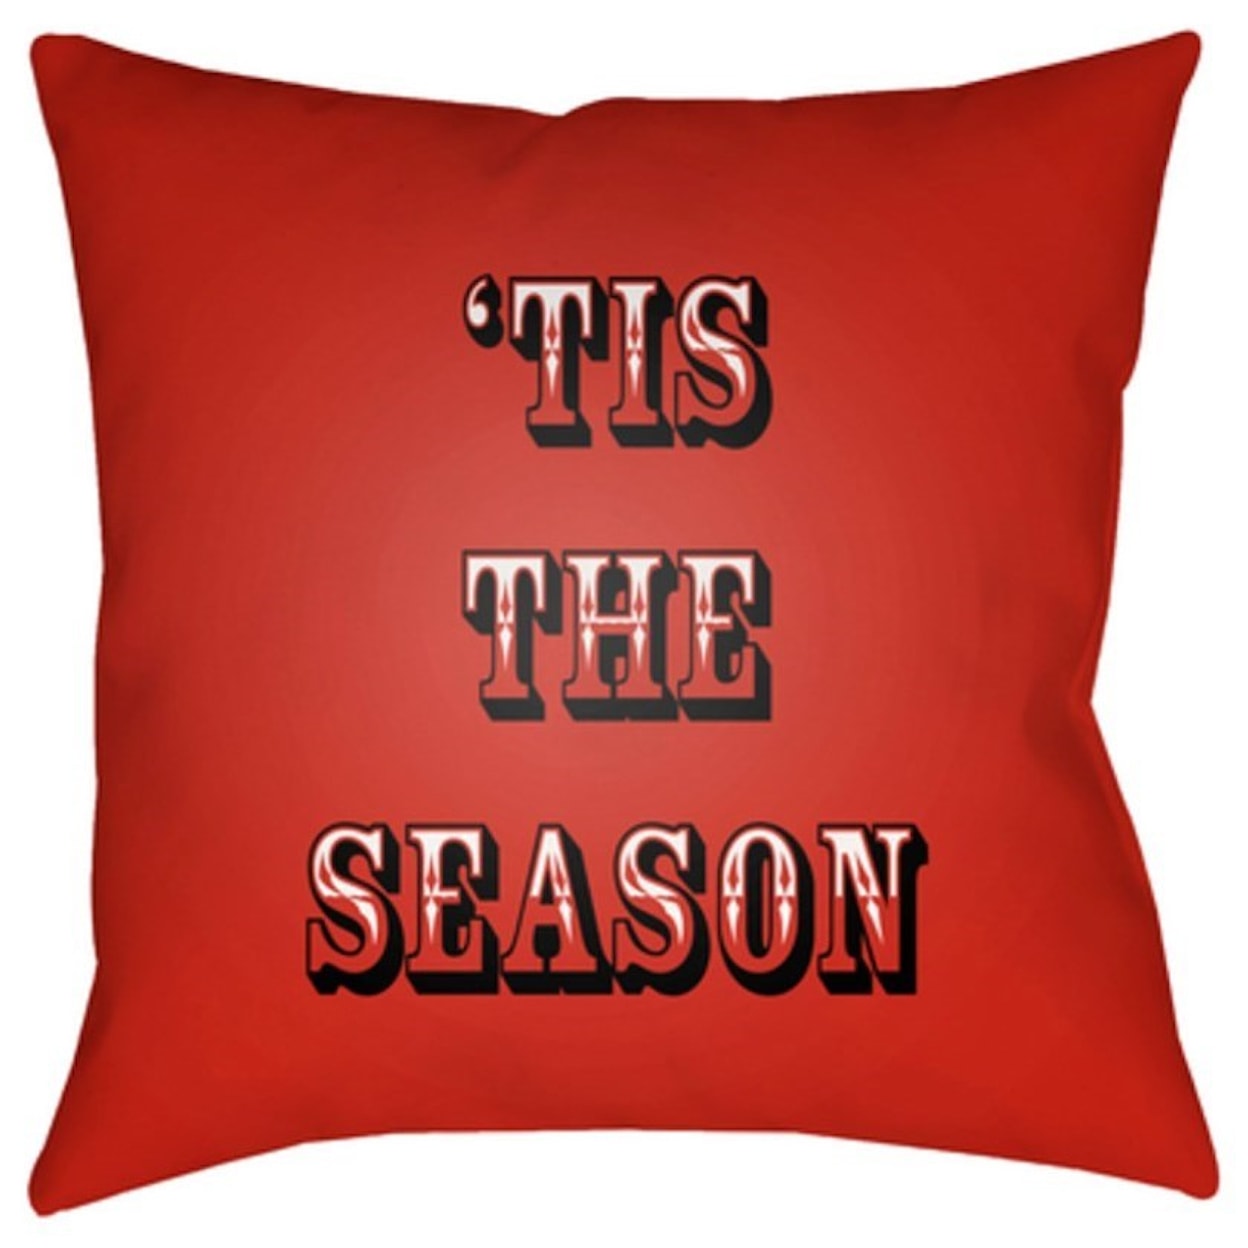 Surya Tis The Season II Pillow